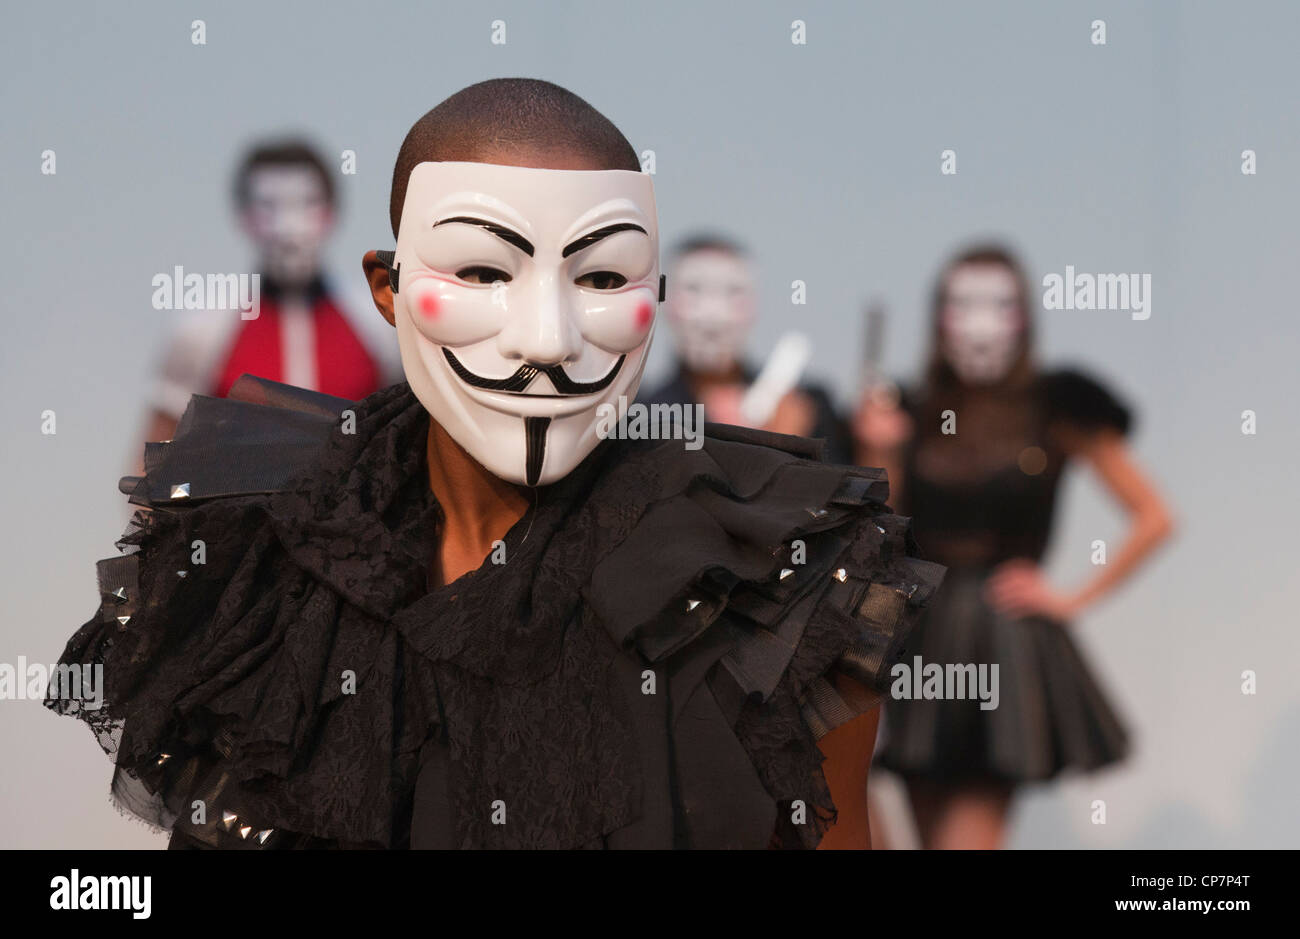 Modelle mit "V for Vendetta" Masken Modellierung Entwürfe von Charlotte Haggerty und Brett Le Bratt auf Alternative Fashion Week 2012 Stockfoto